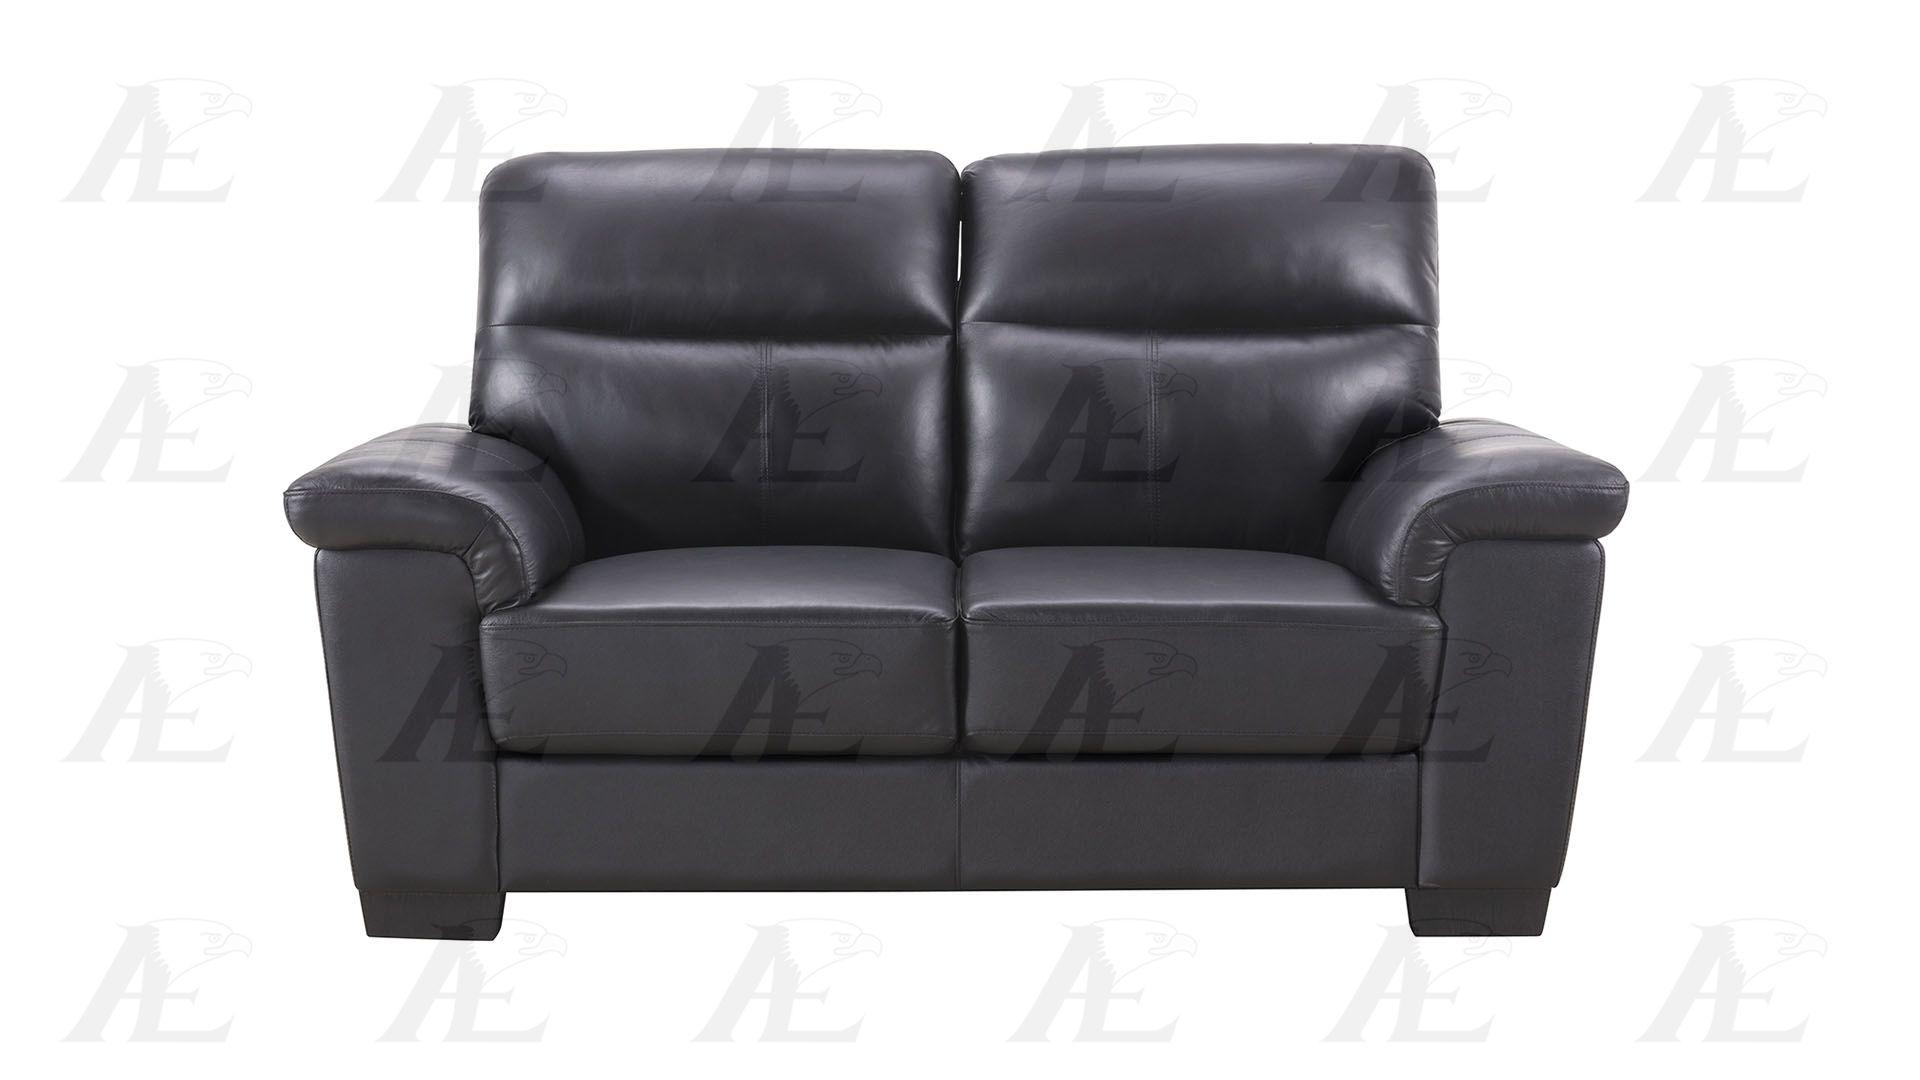 

                    
American Eagle Furniture EK515-BK Sofa Set Black Genuine Leather Purchase 
